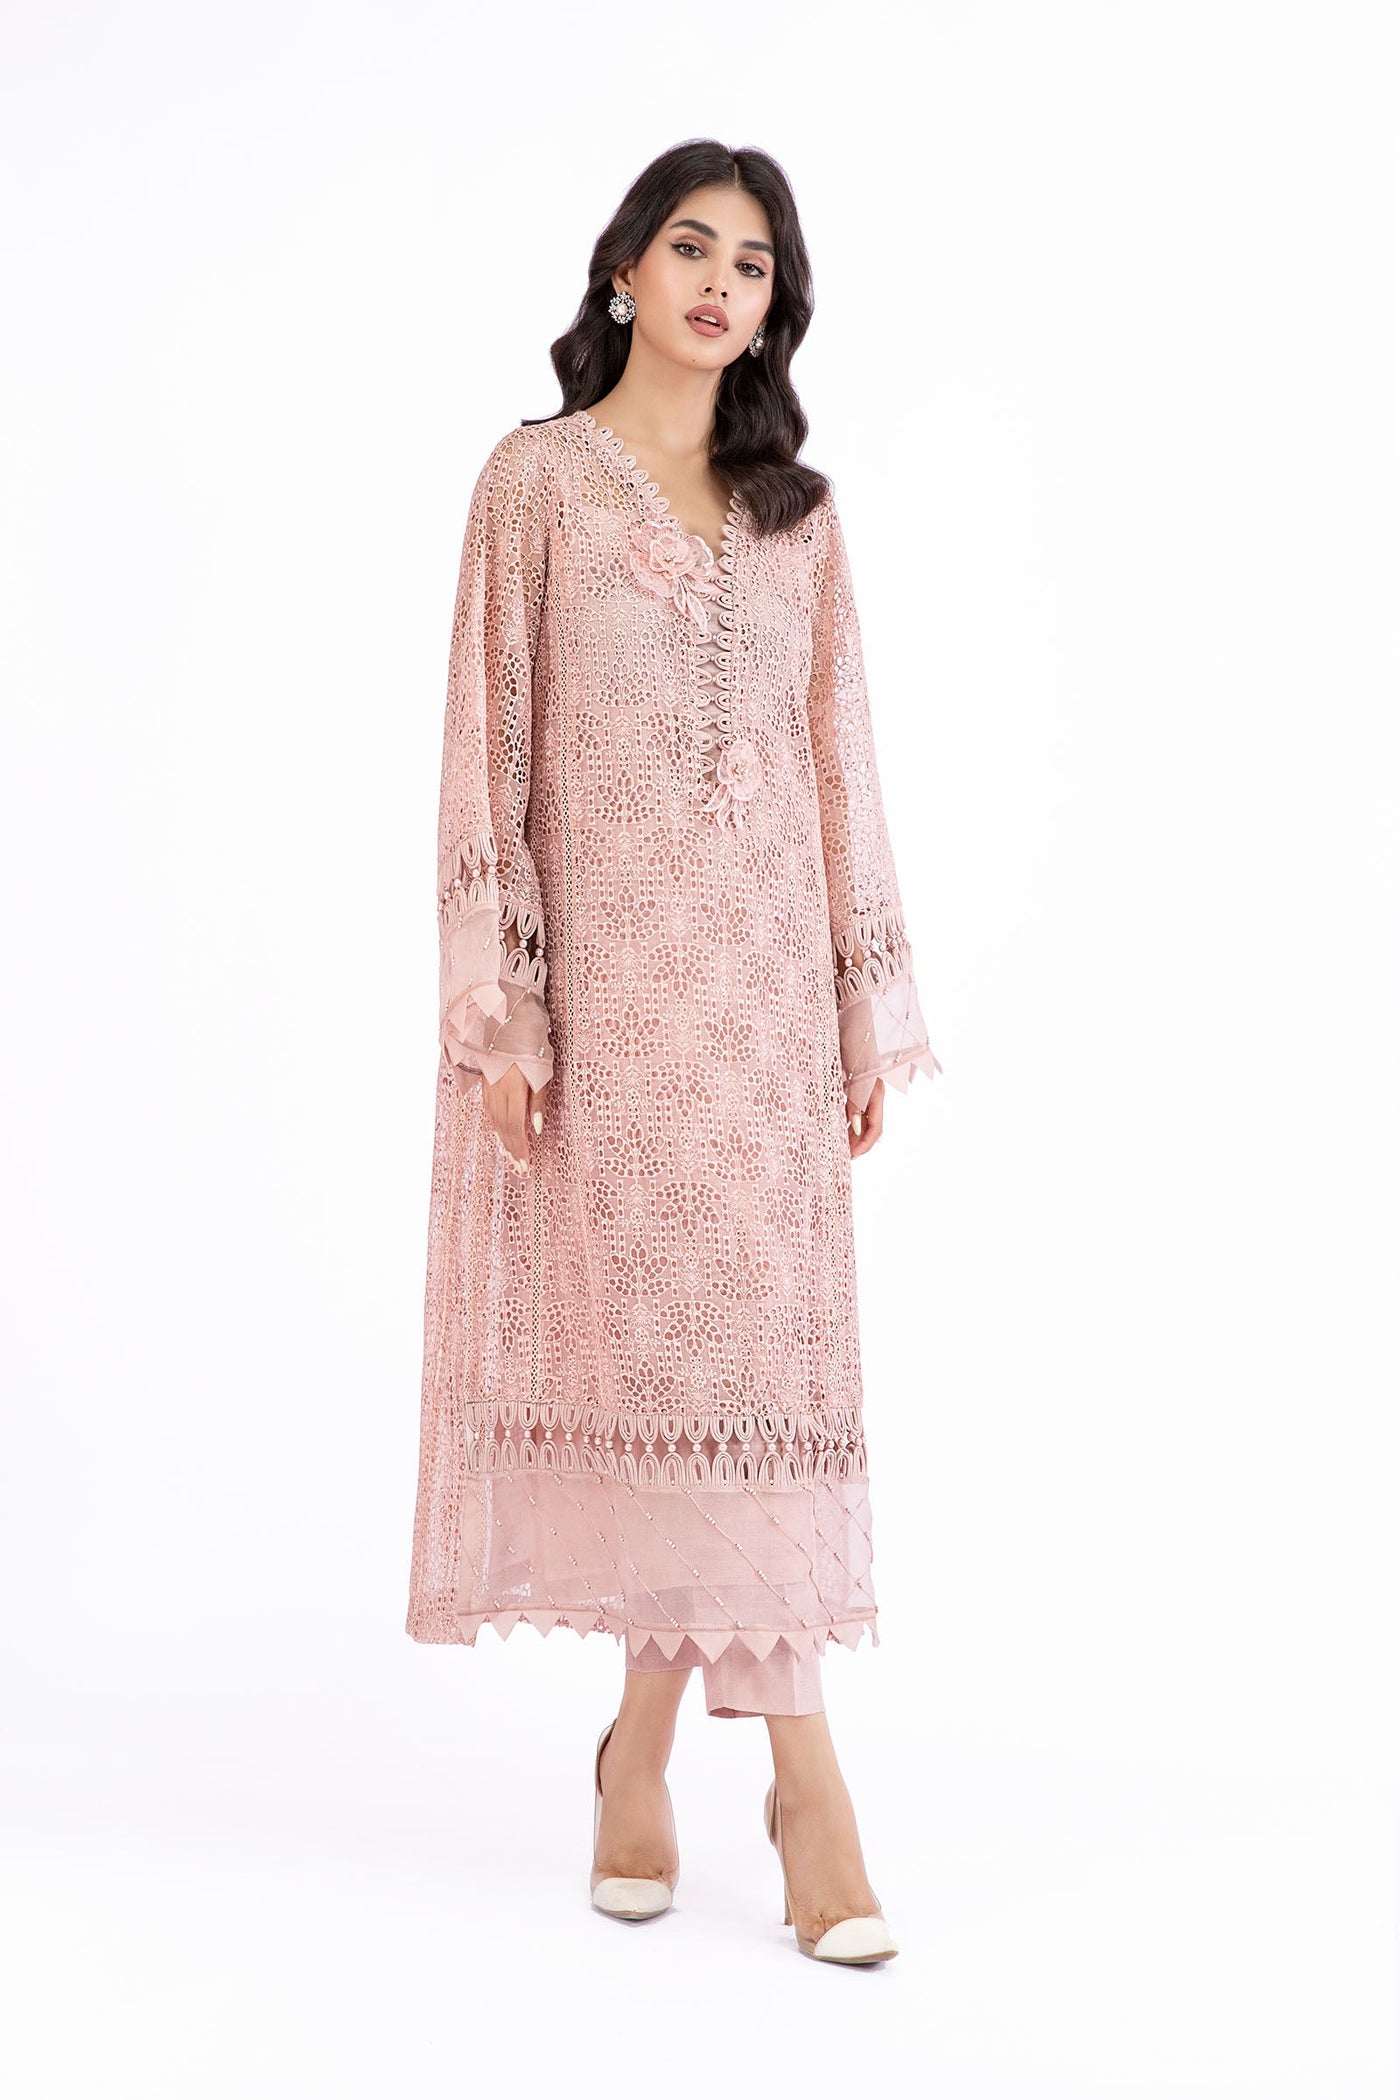 M.Luxe Fabrics Pink LF-513